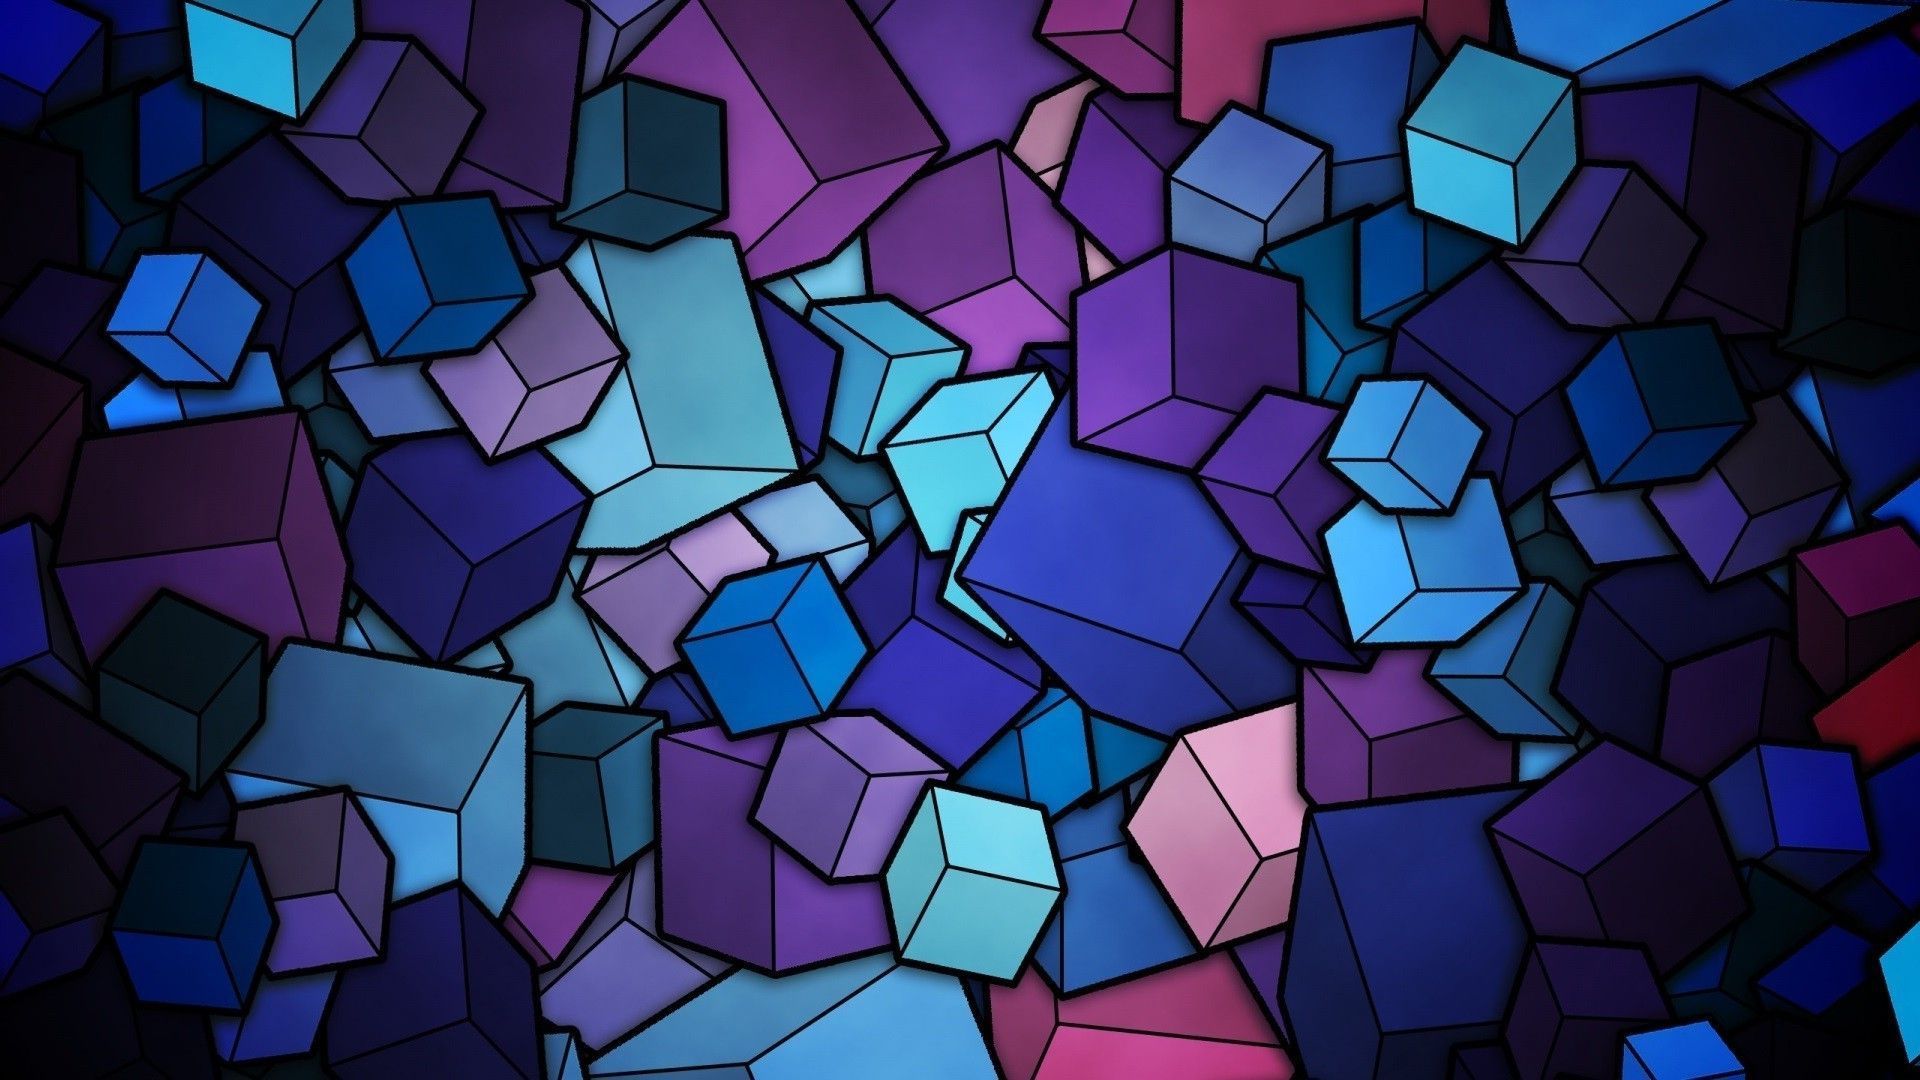 3D Cubes Backgrounds